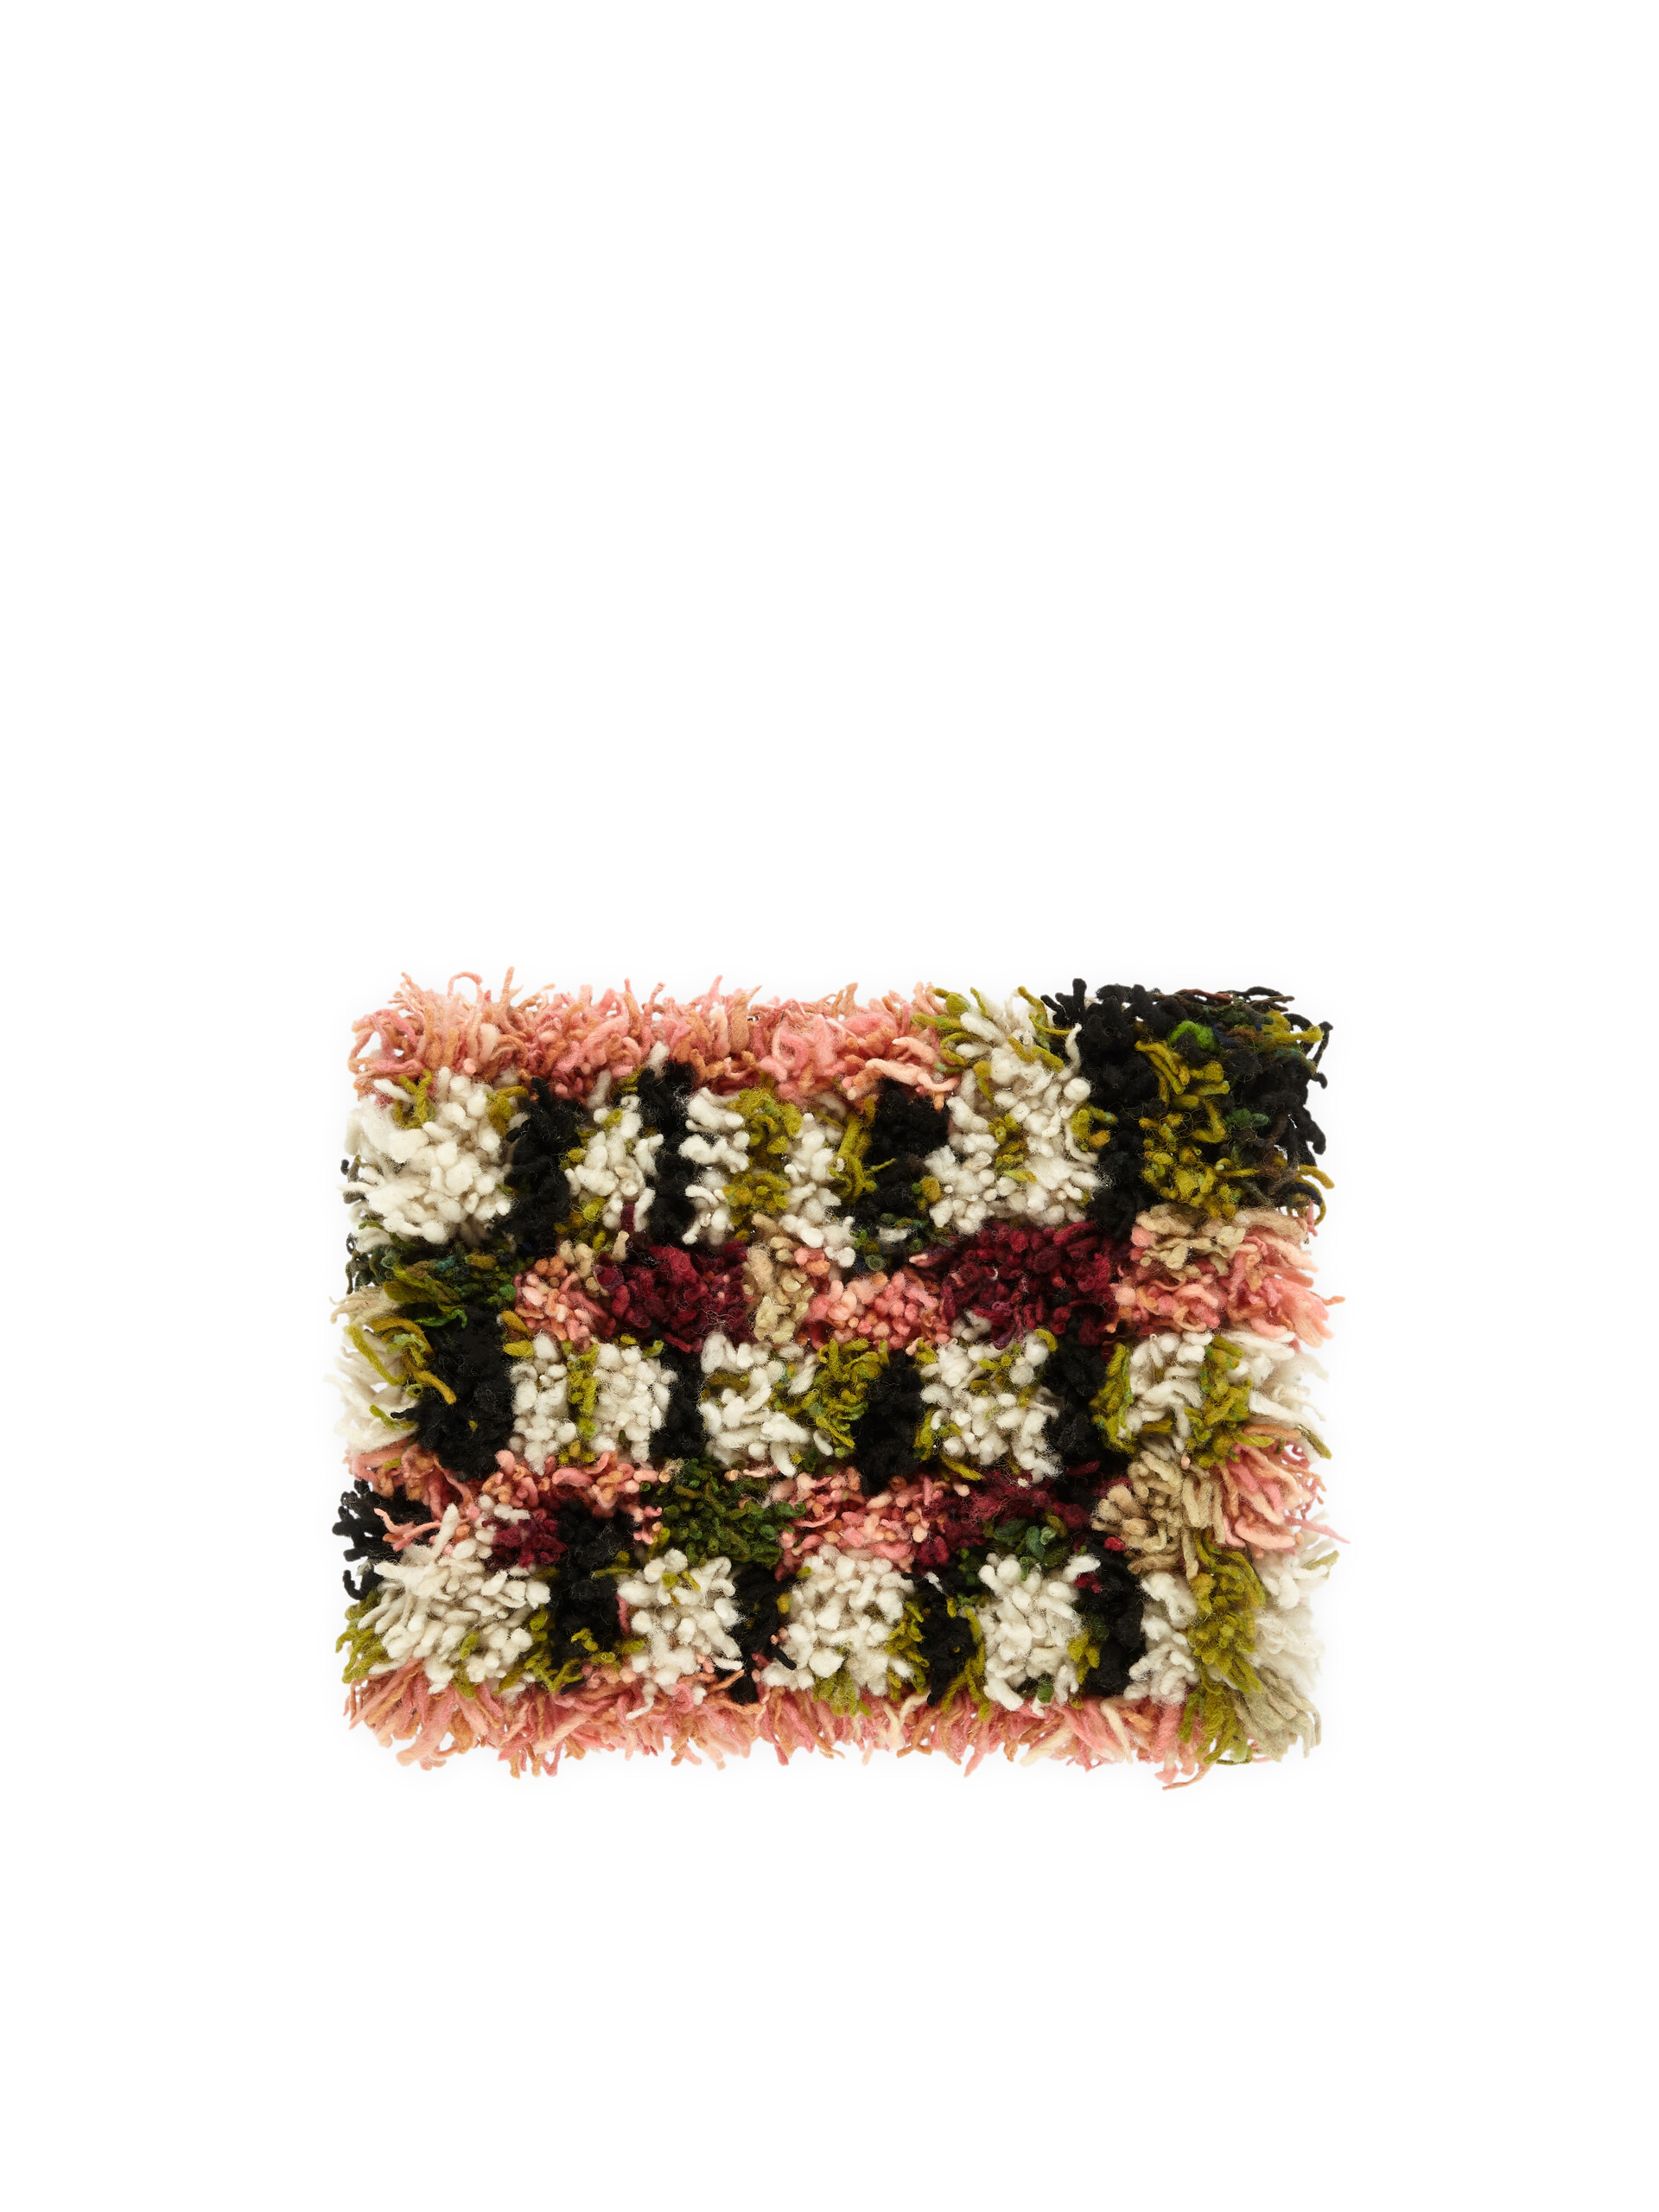 Sgabello MARNI MARKET in ferro lana nero multicolor - Arredamento - Image 3